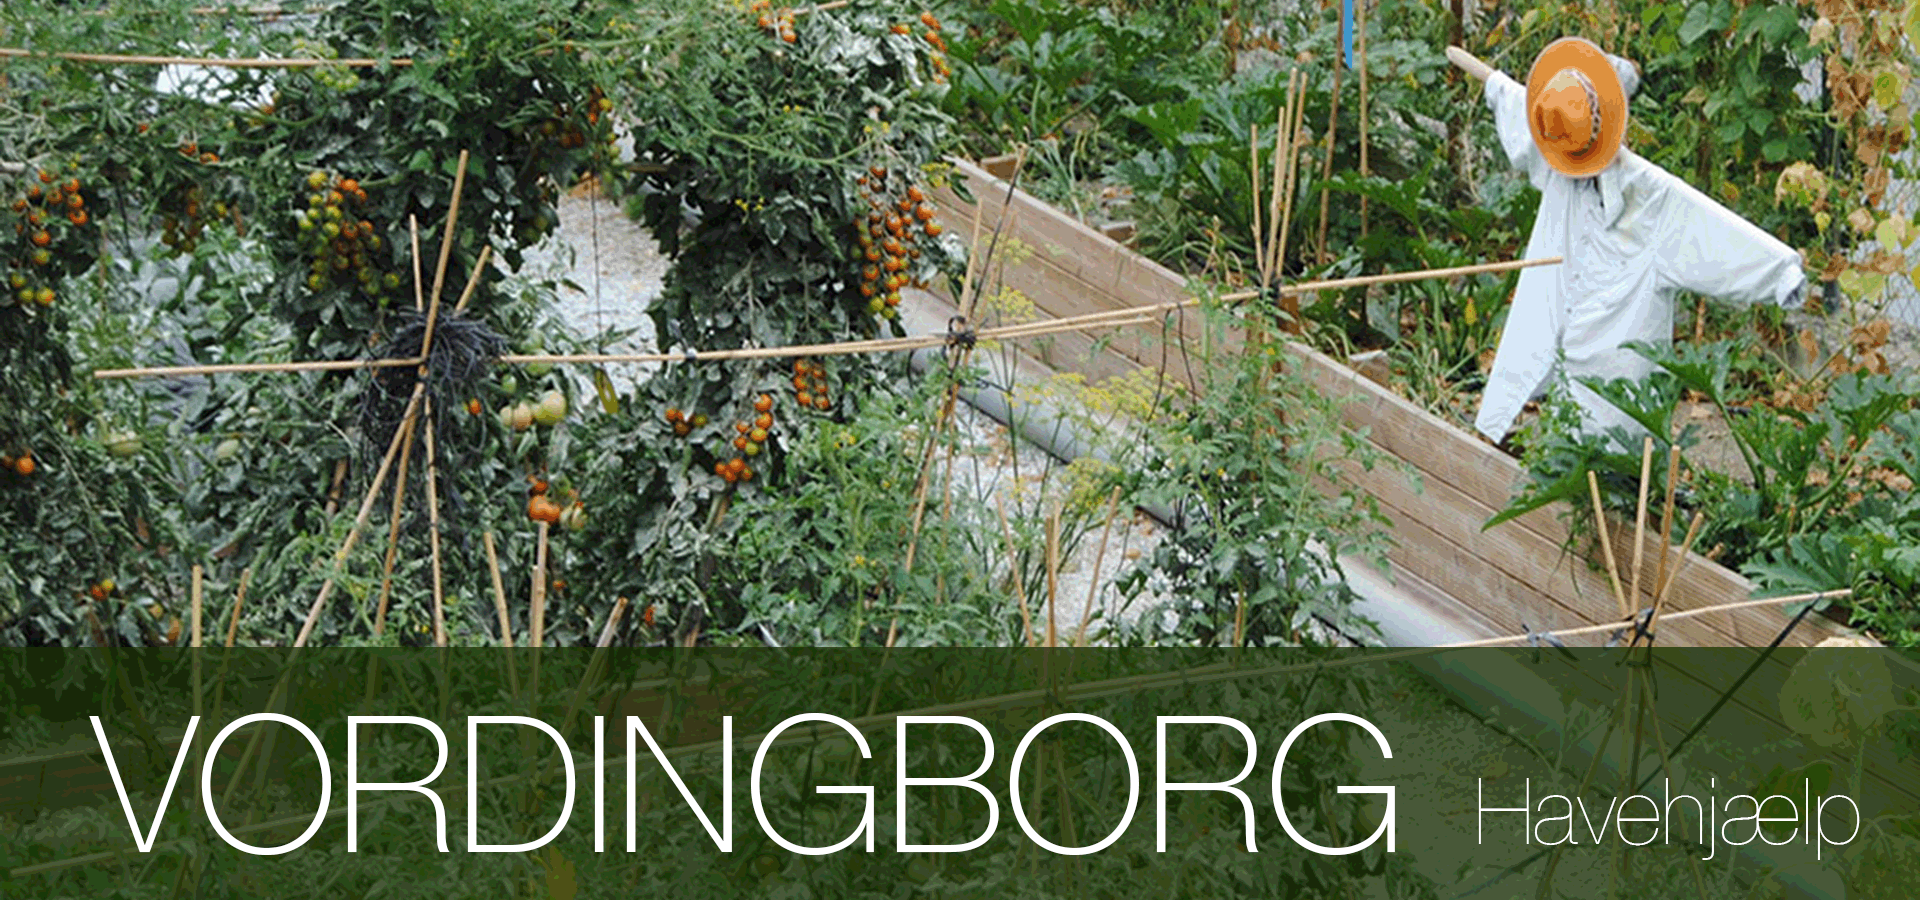 Havearbejde lokal havehjælp Vordingborg